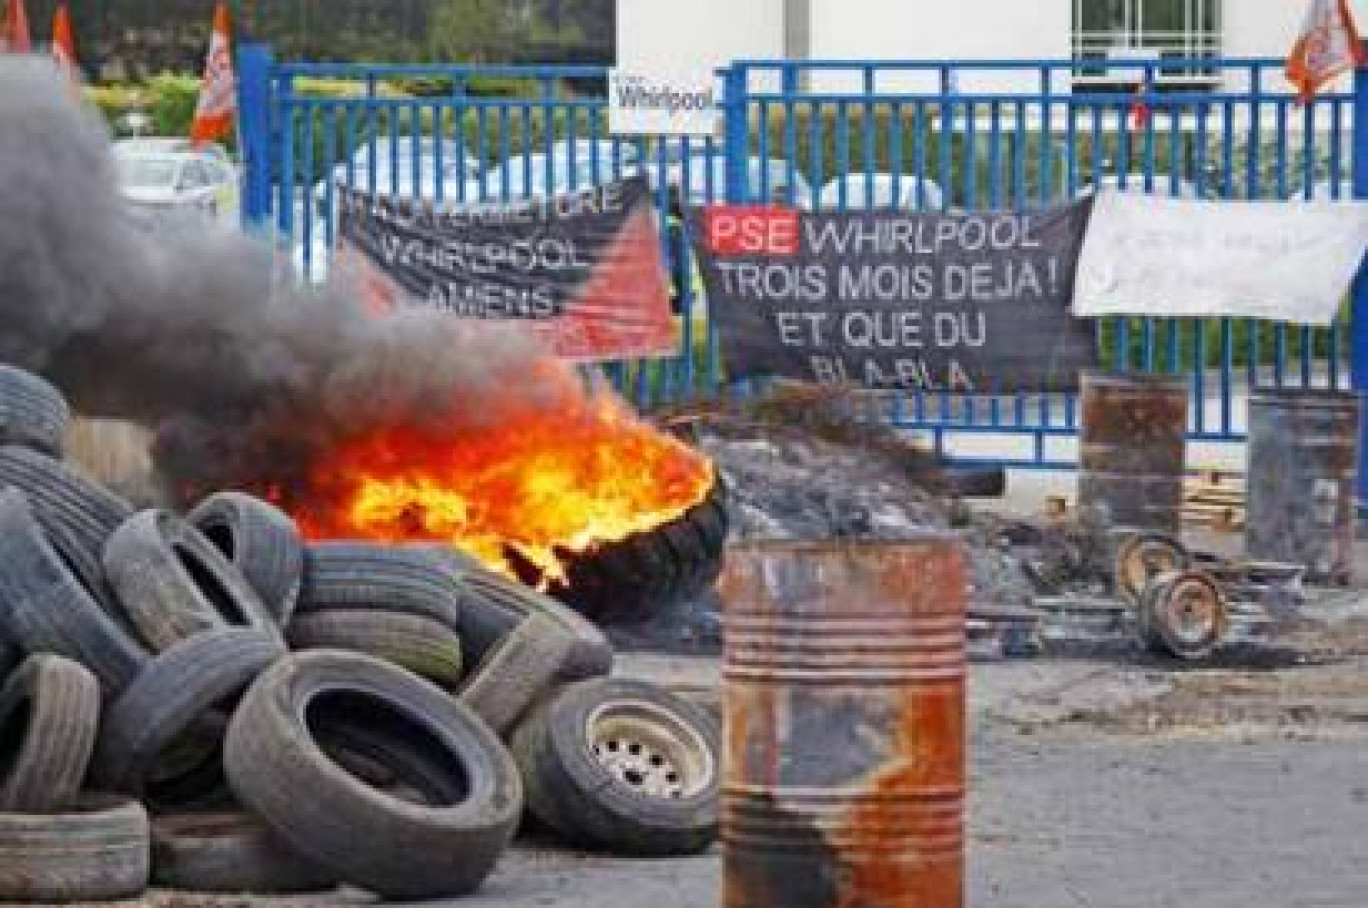 Depuis une dizaine de jours, les salariés de Whirlpool brûlent des pneus à l'entrée de l'usine, signe de leur mécontentement